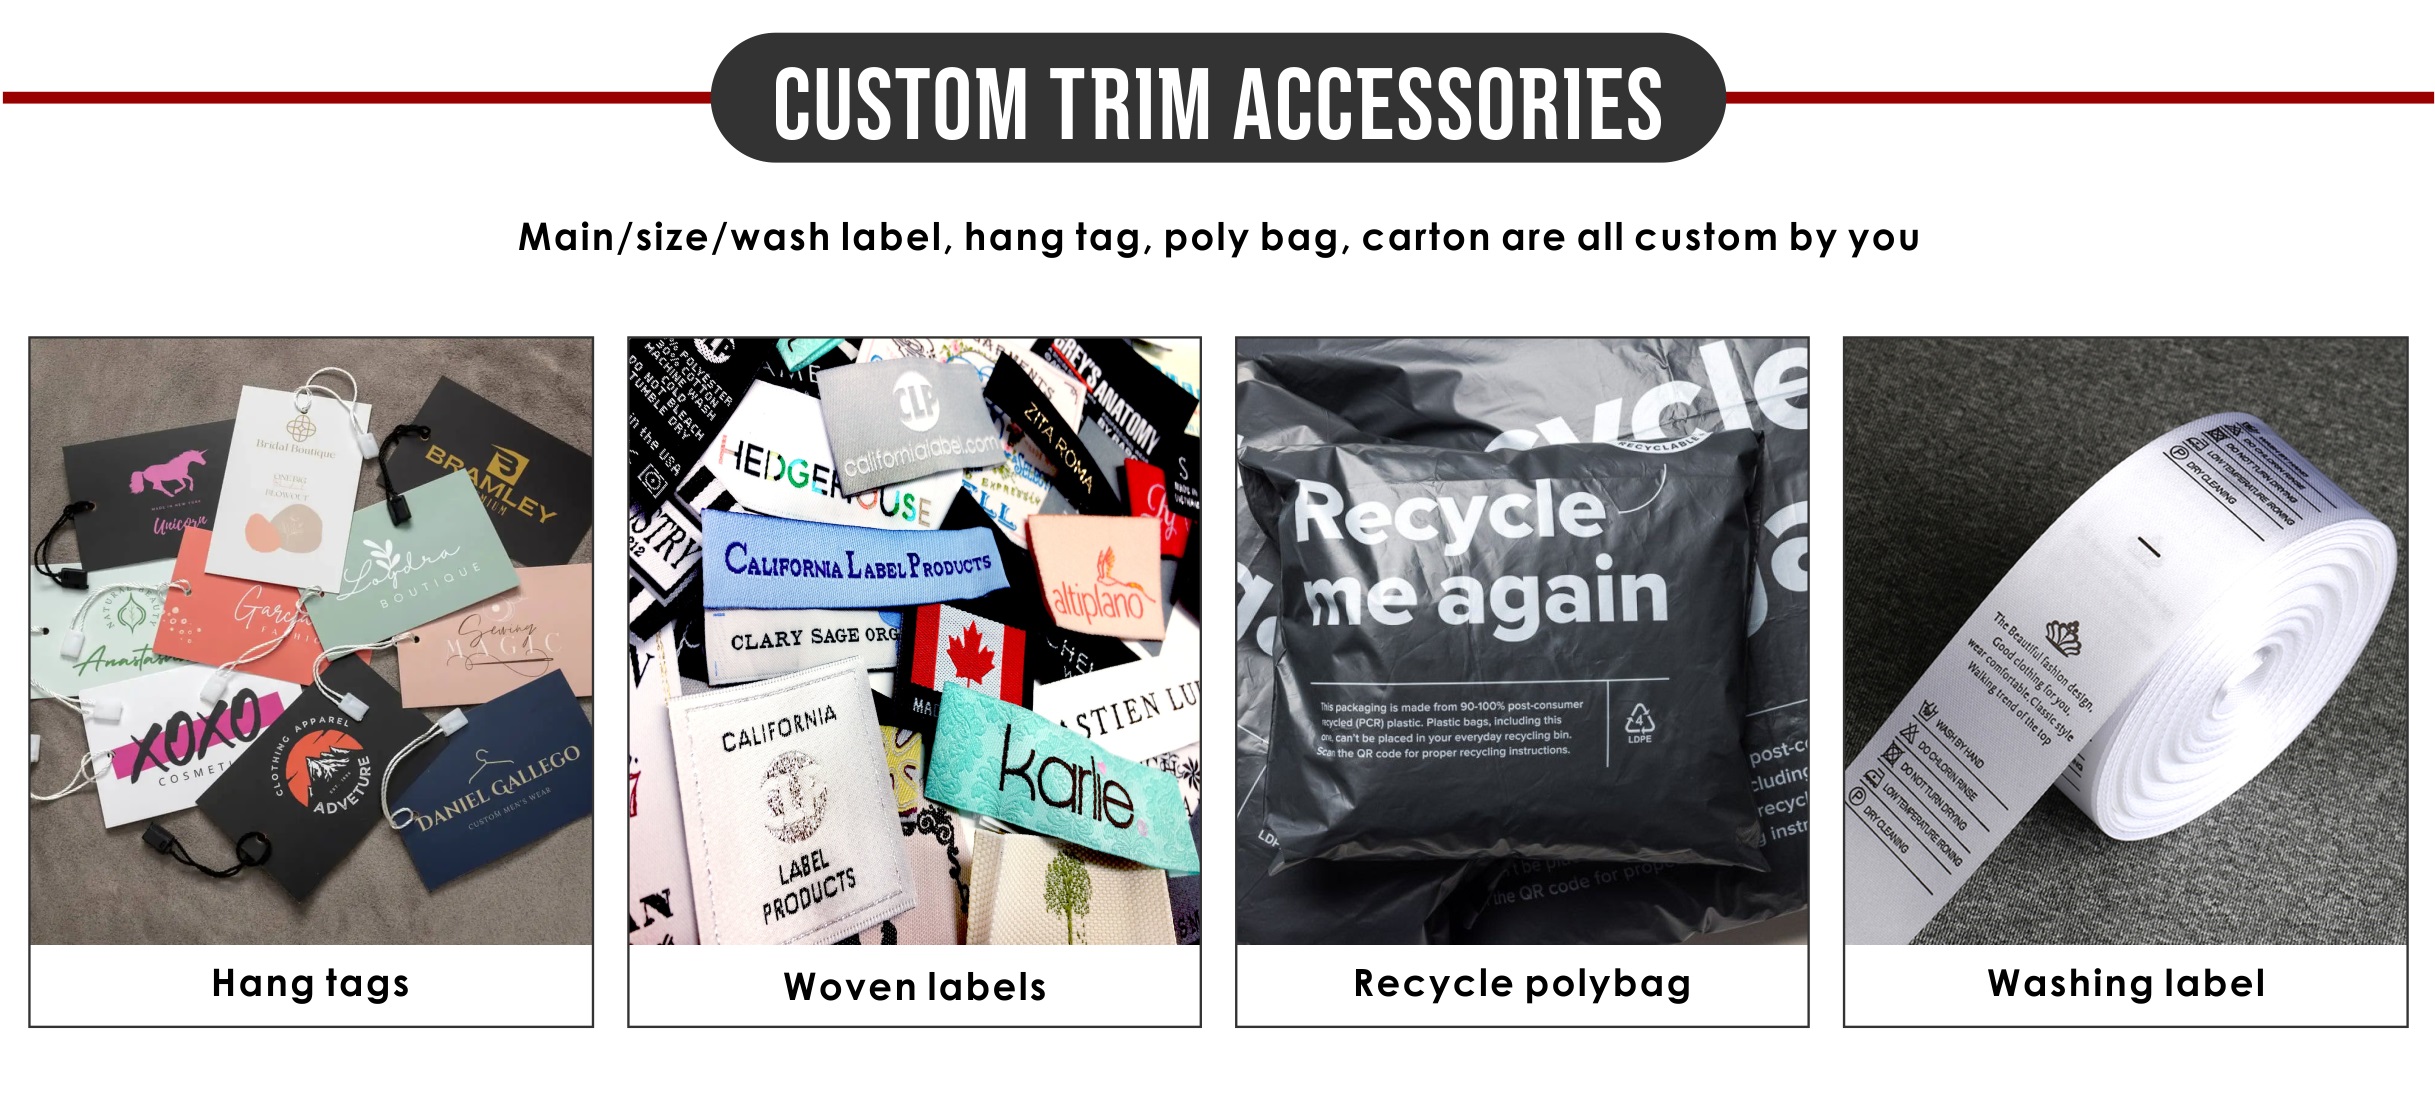 5.-custom trim accessories-